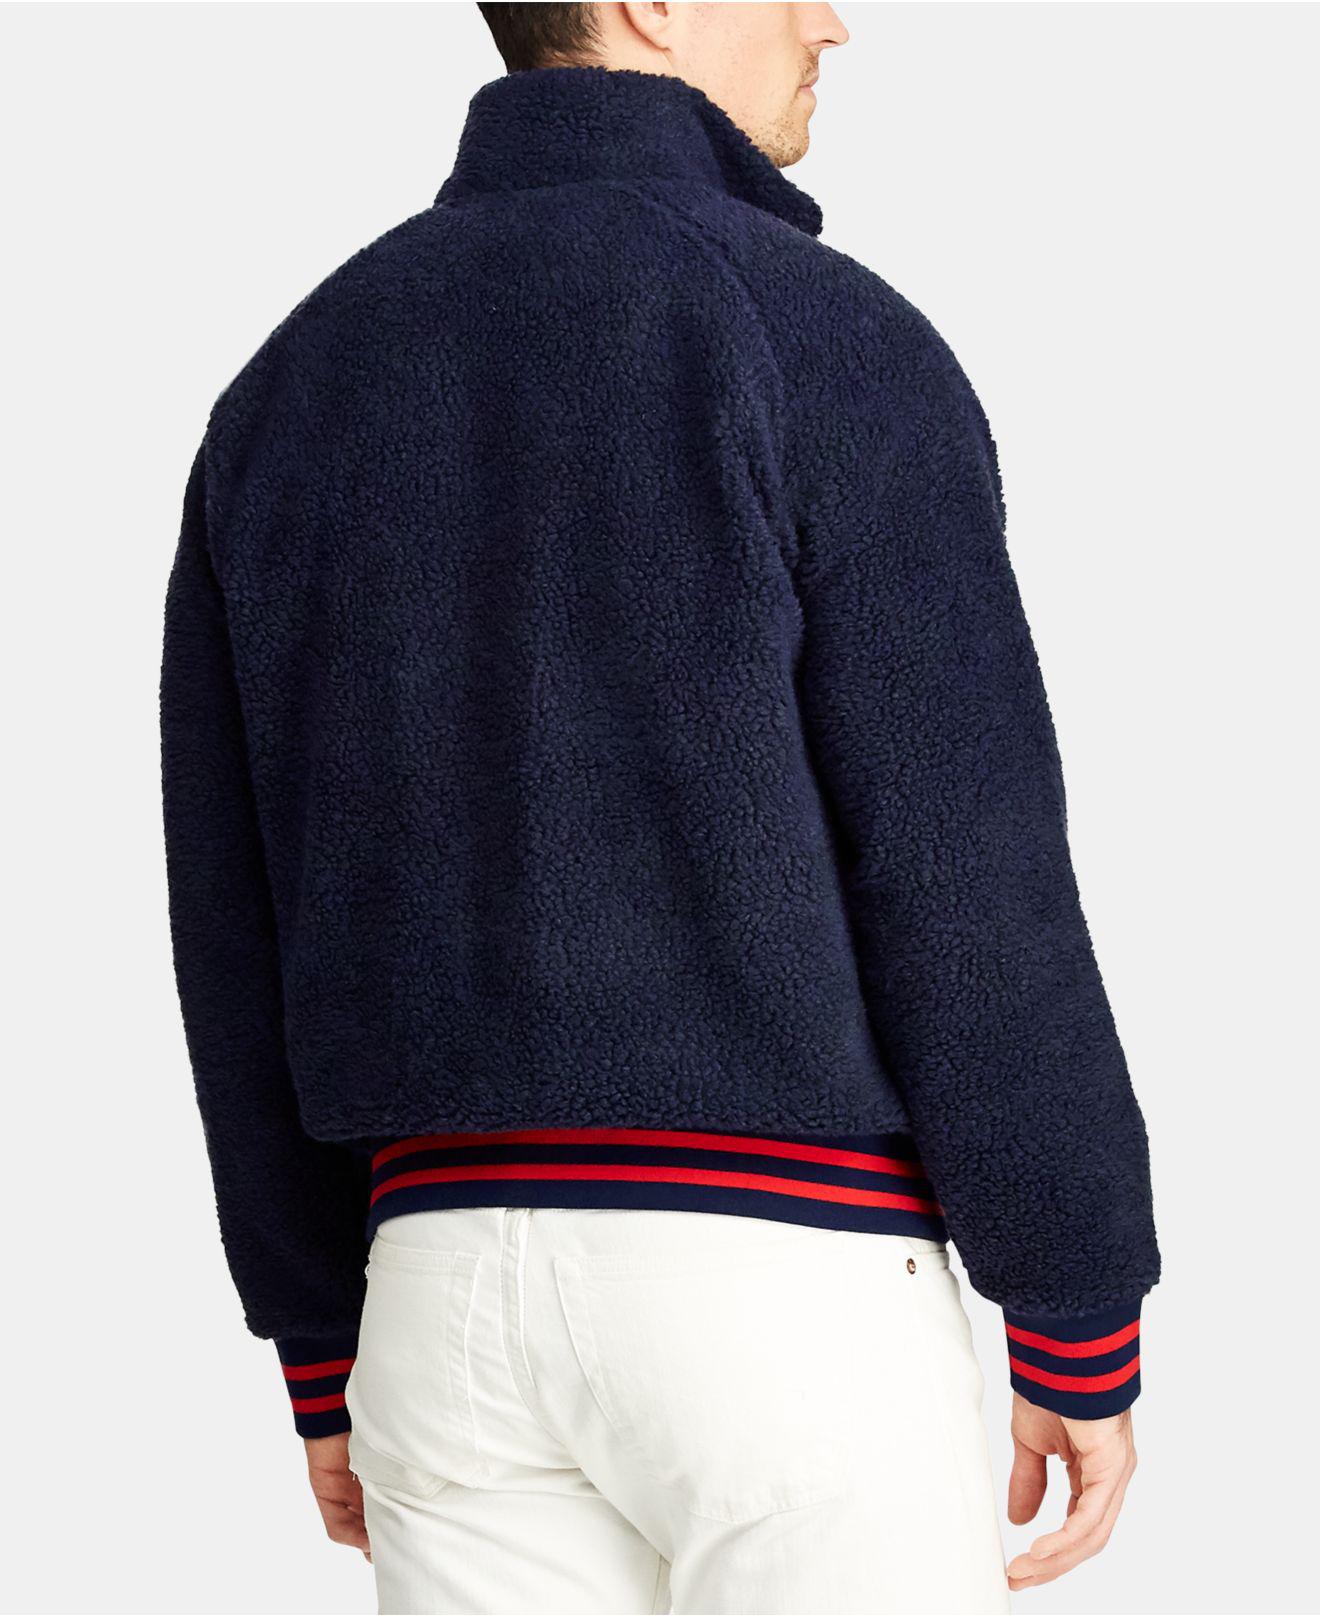 Polo Ralph Lauren Sherpa Zip Up Fleece in Navy (Blue) for Men - Lyst